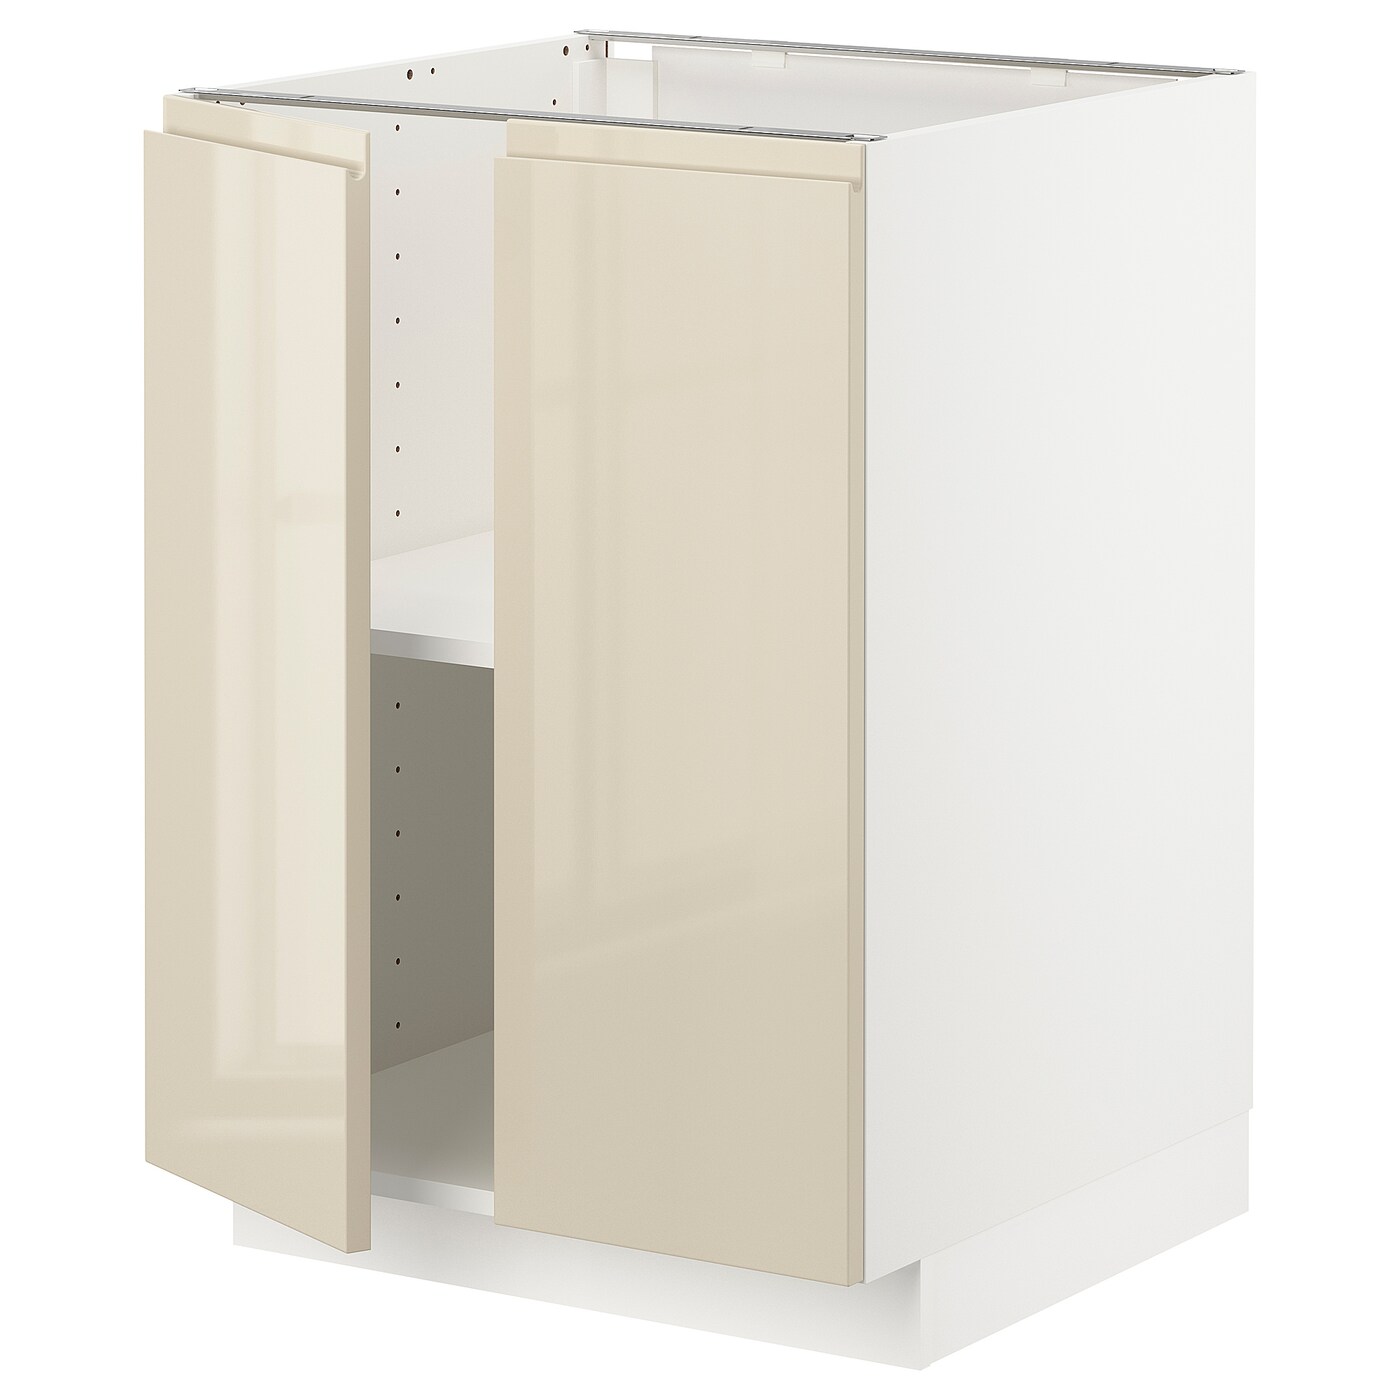 Напольный шкаф  - IKEA METOD, 88x62x60см, белый/светло-бежевый, МЕТОД ИКЕА